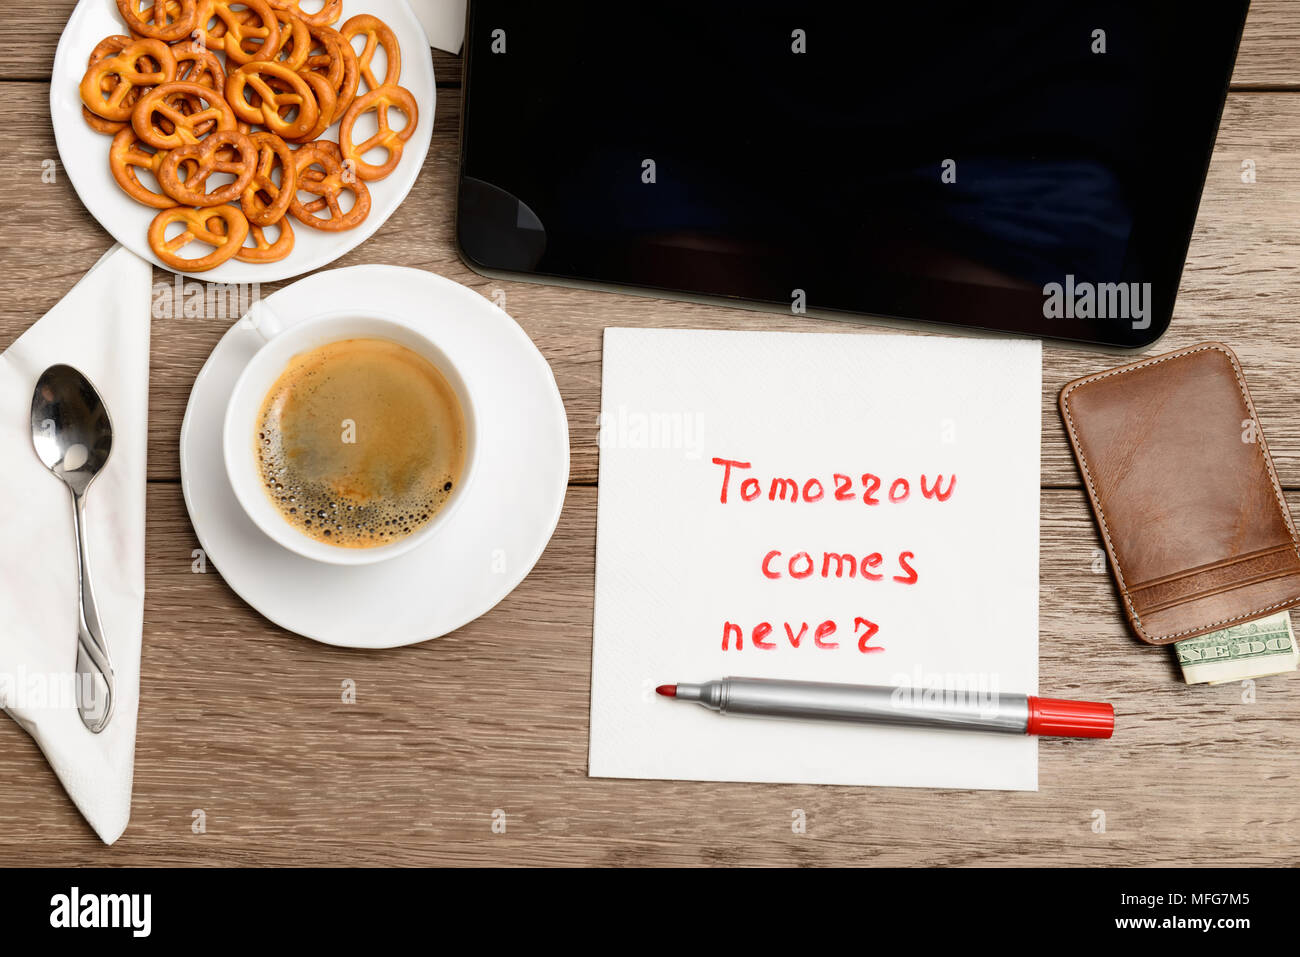 Tovagliolo proverbio del messaggio sul tavolo di legno con caffè, alcuni alimenti e tablet PC domani arriva mai Foto Stock